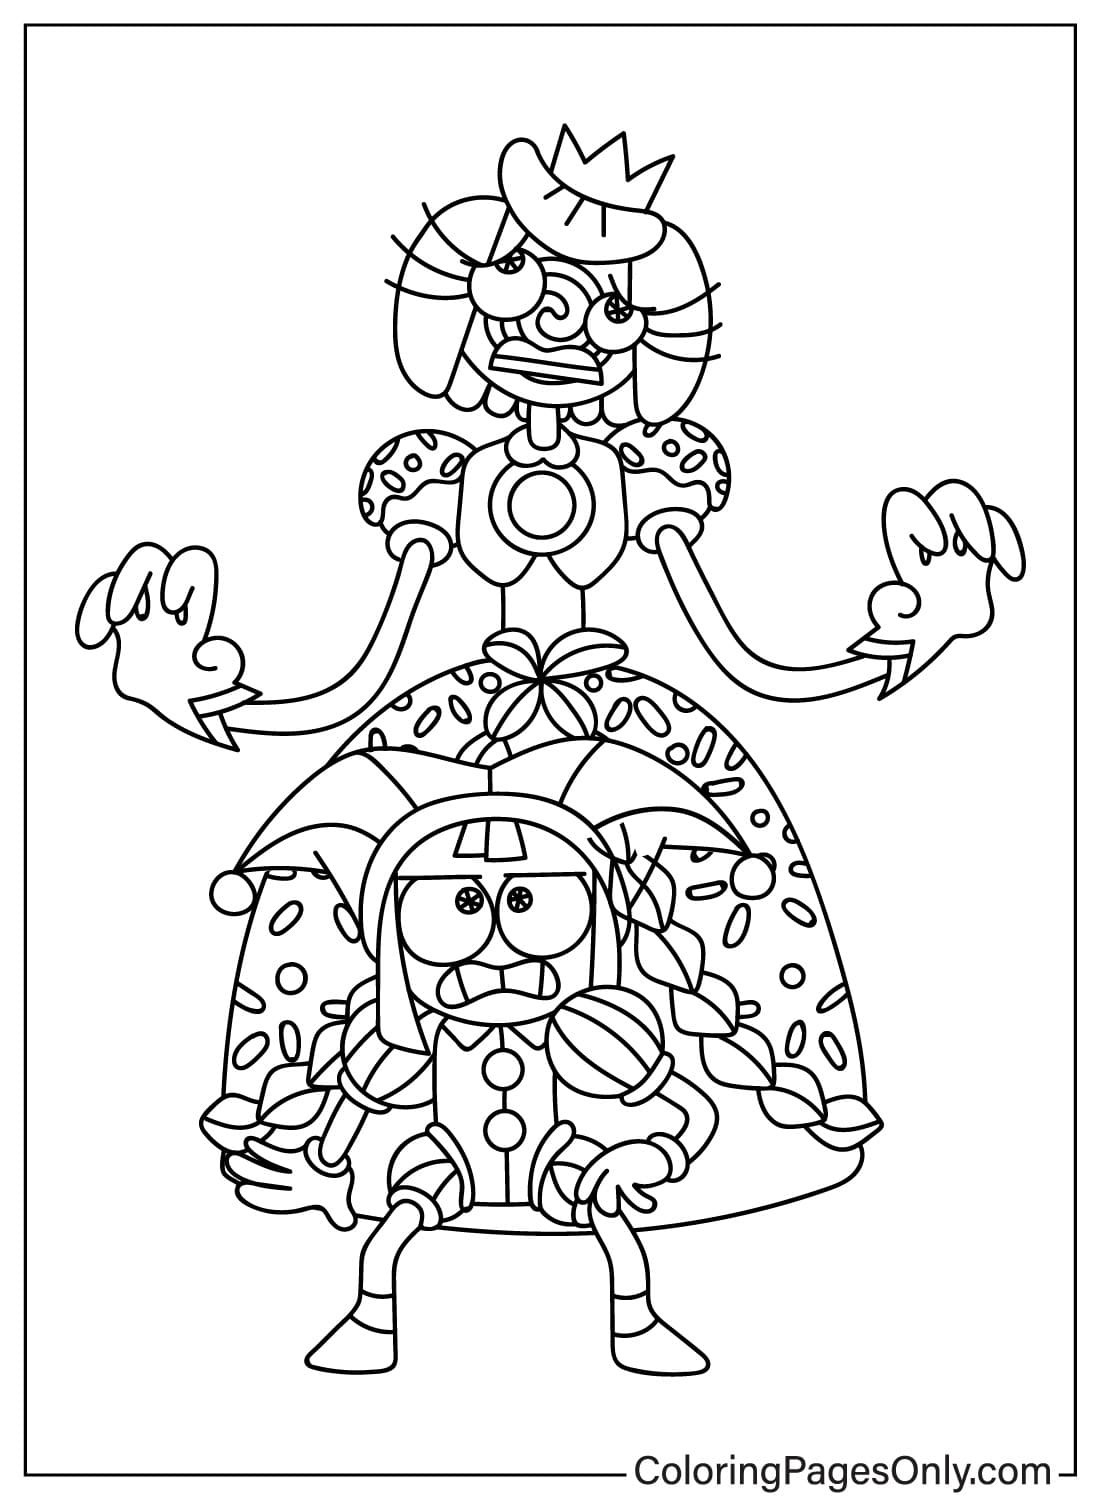 Página para colorear asustada de la princesa Loolilalu y Pomni de The Amazing Digital Circus